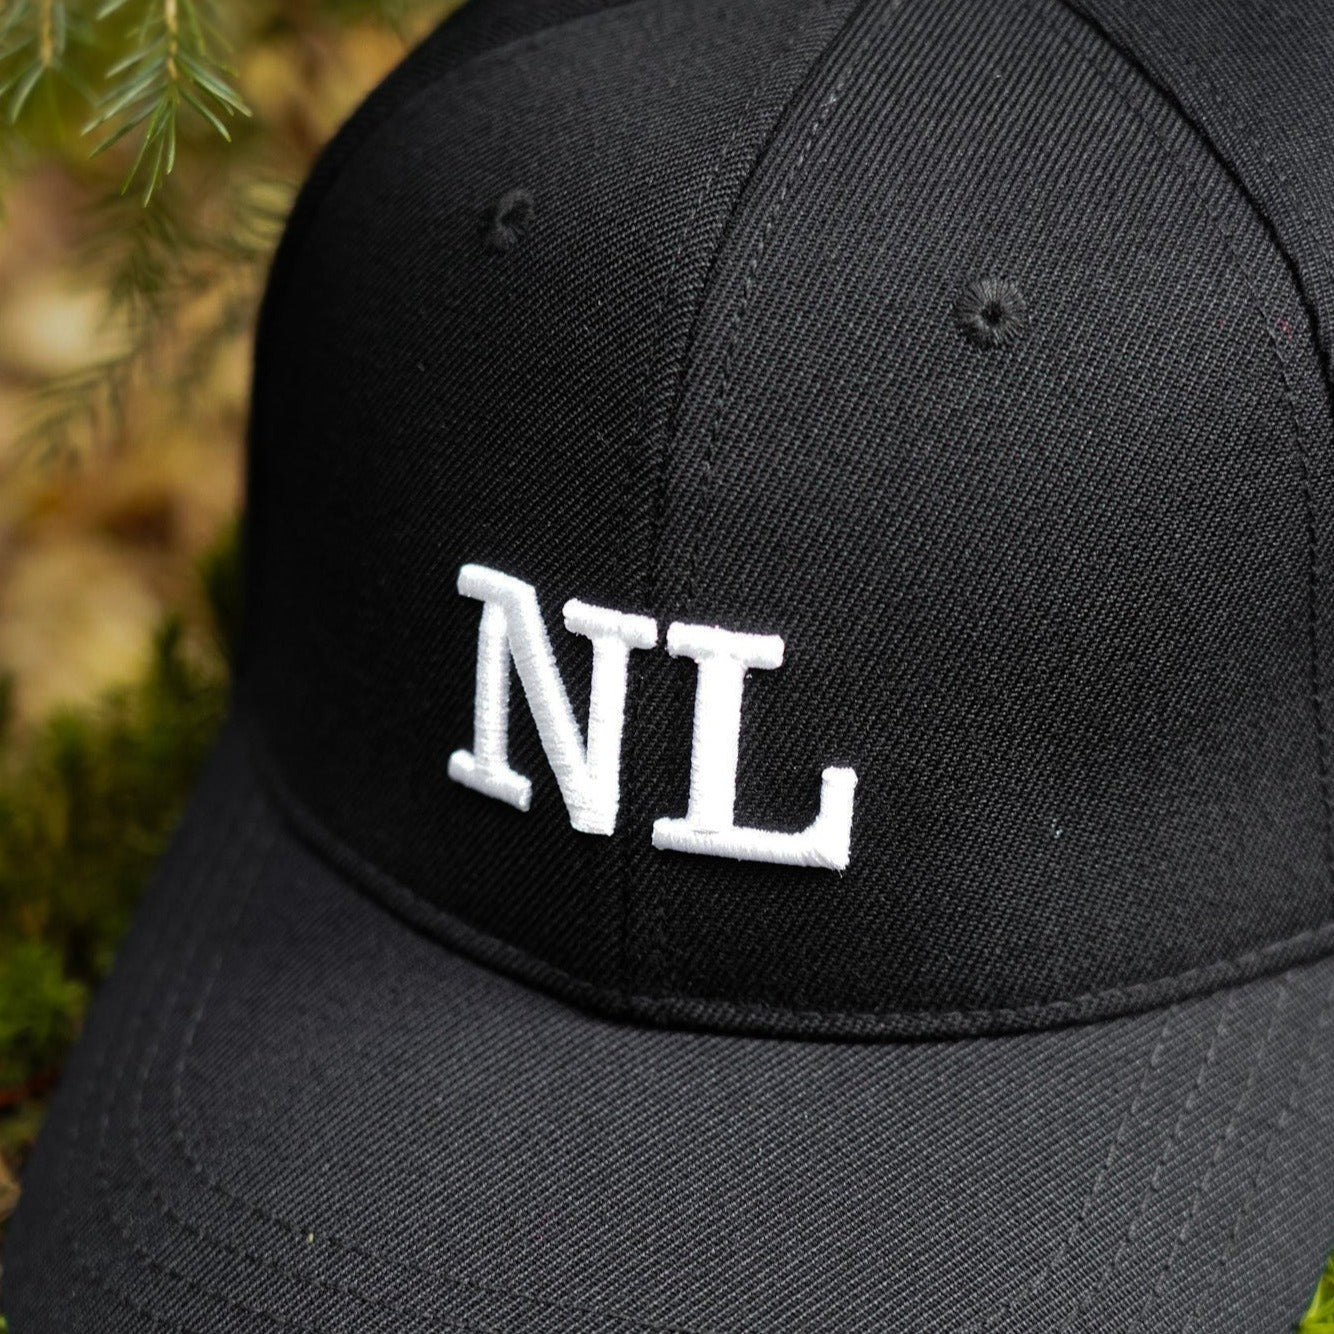 NL Dad cap - Black/white